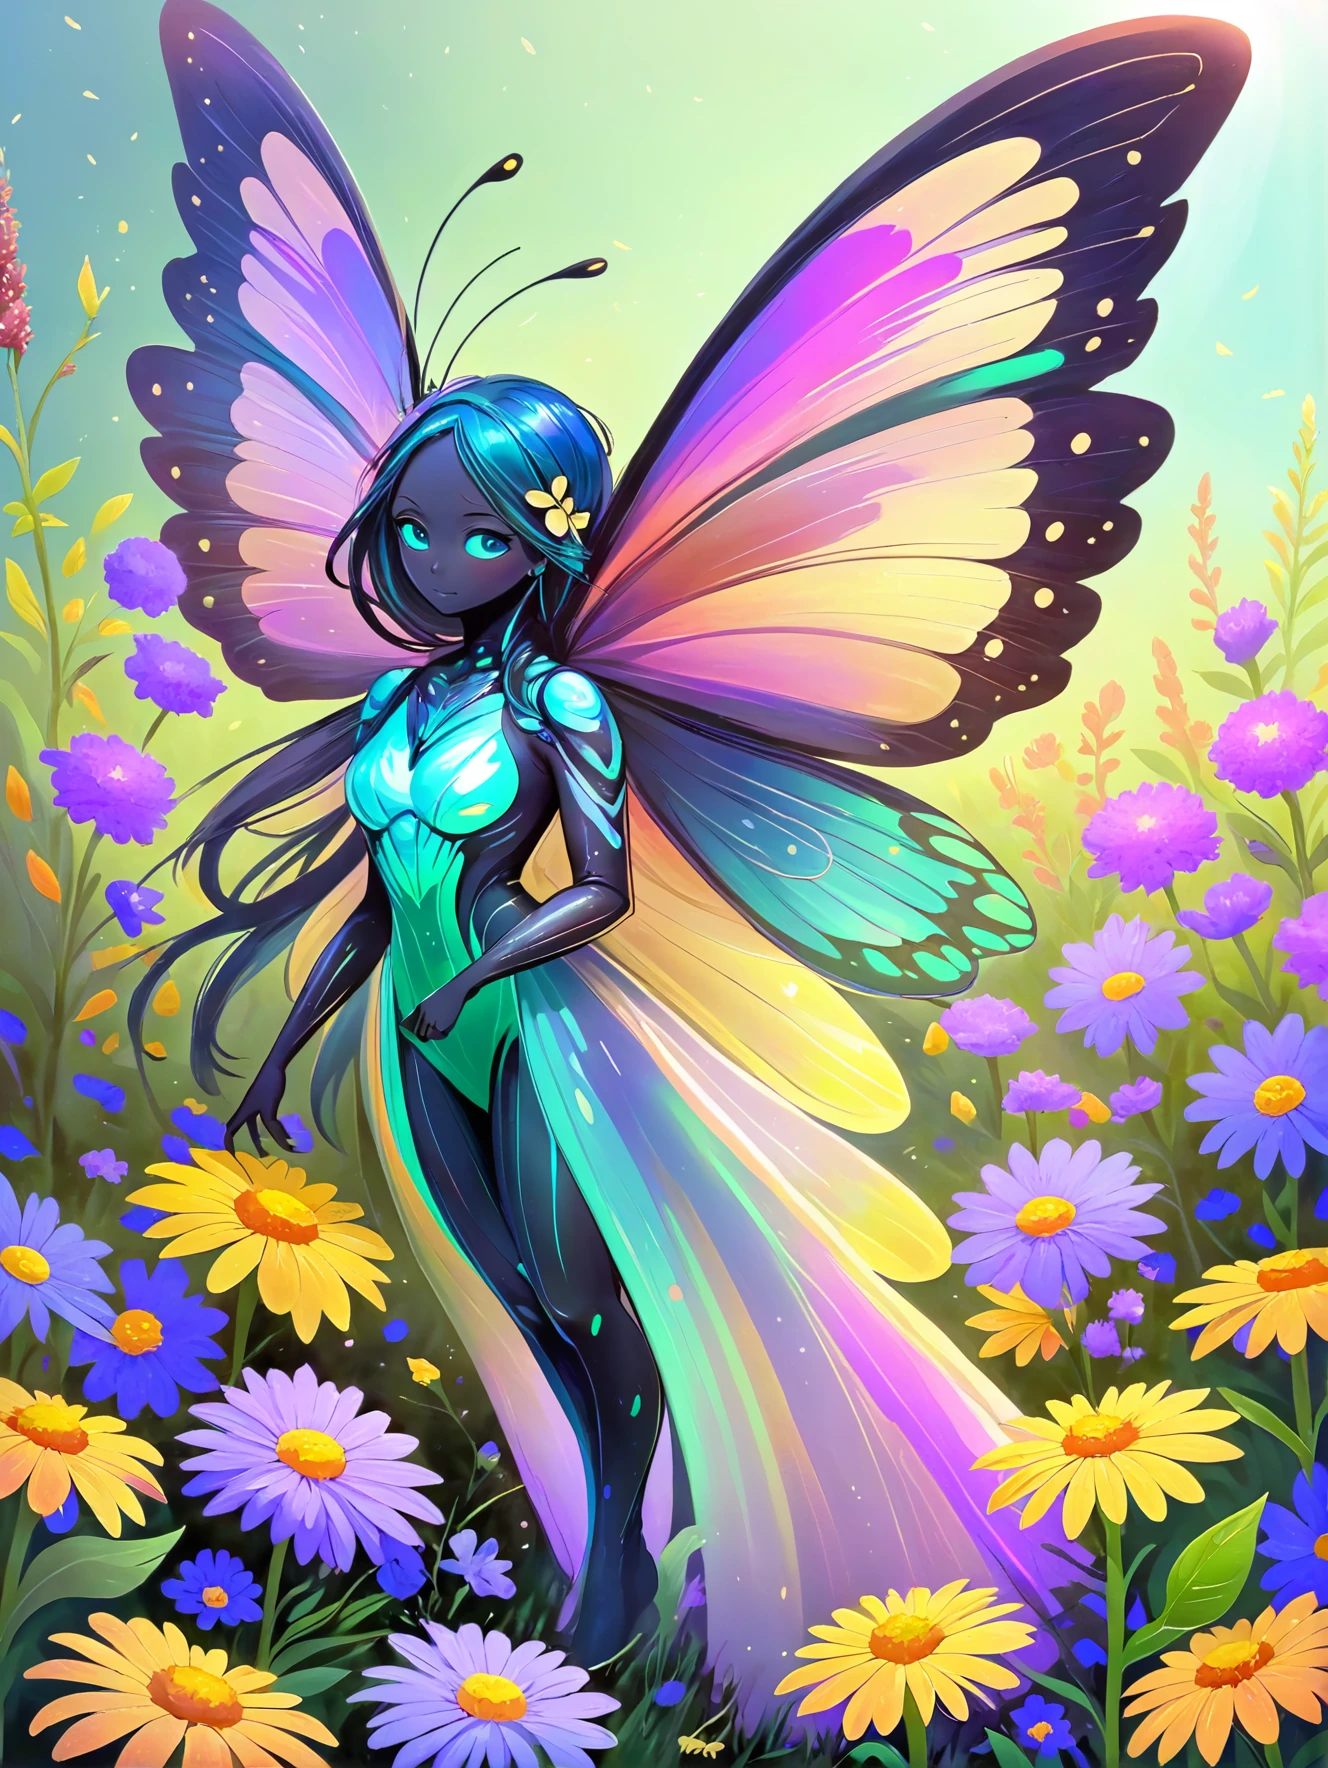 روح الفراشة النابضة بالحياة, بأجنحة قزحي الألوان, ترفرف بين حقل من الزهور البرية.